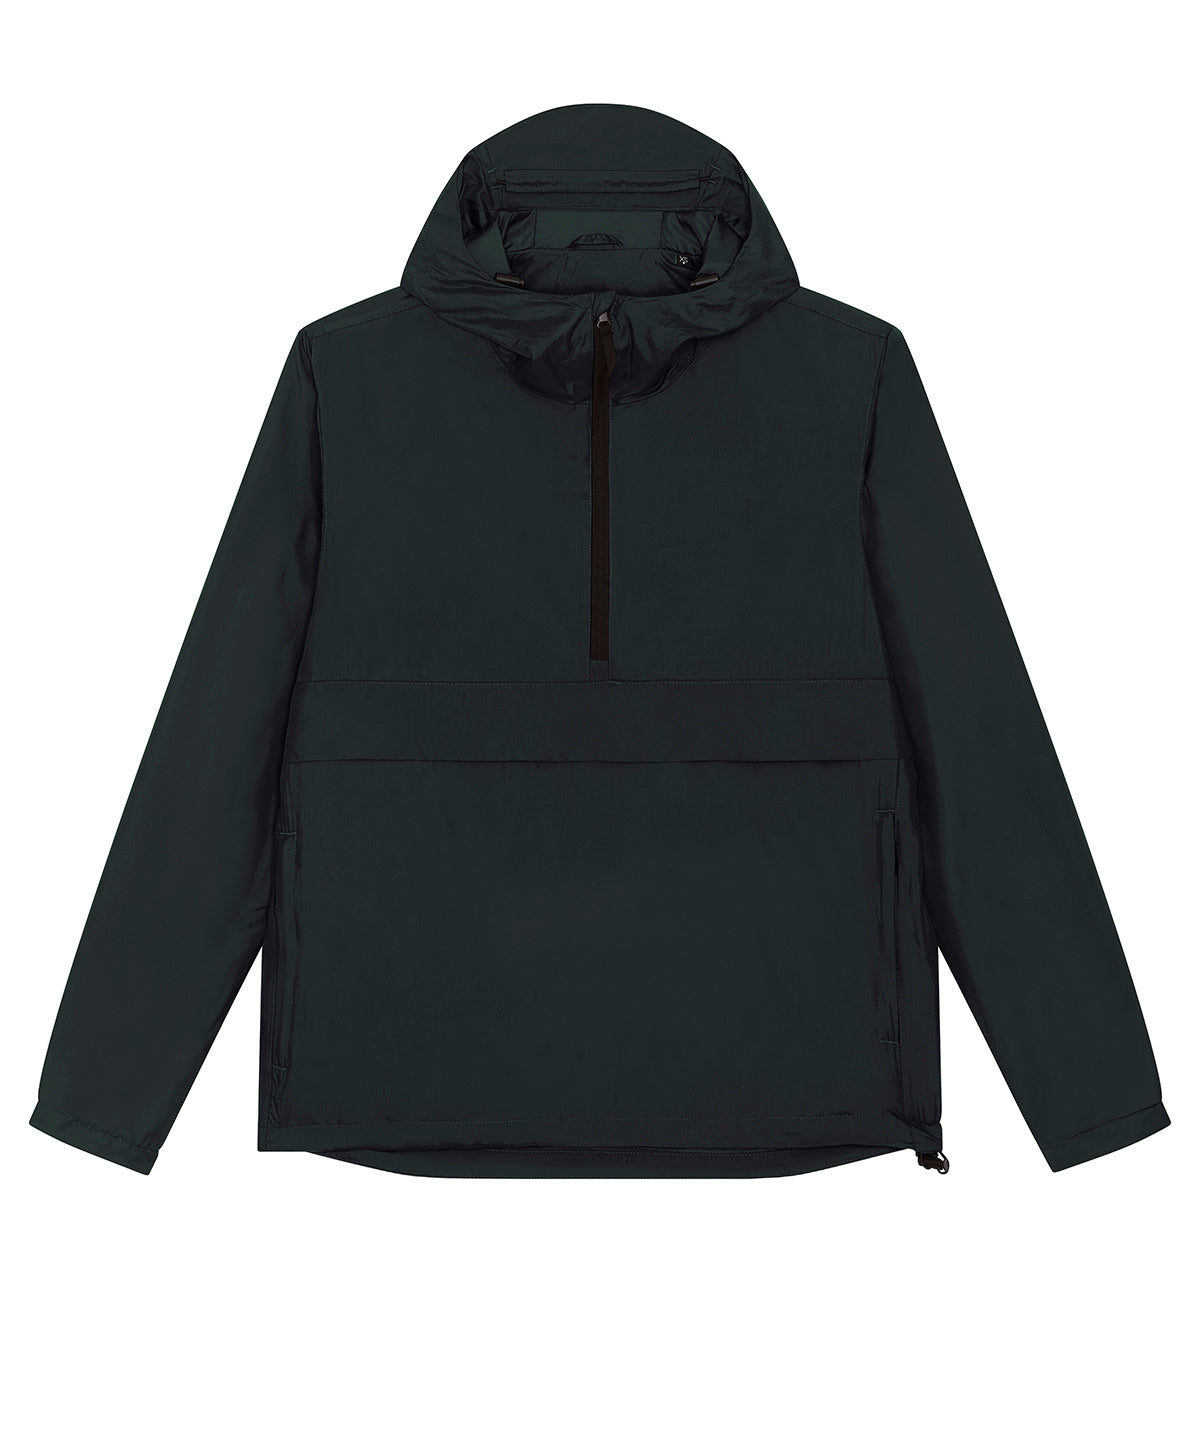 Personalised Hoodies - Black Stanley/Stella Speeder sporty, street-style hoodie (STJU834)